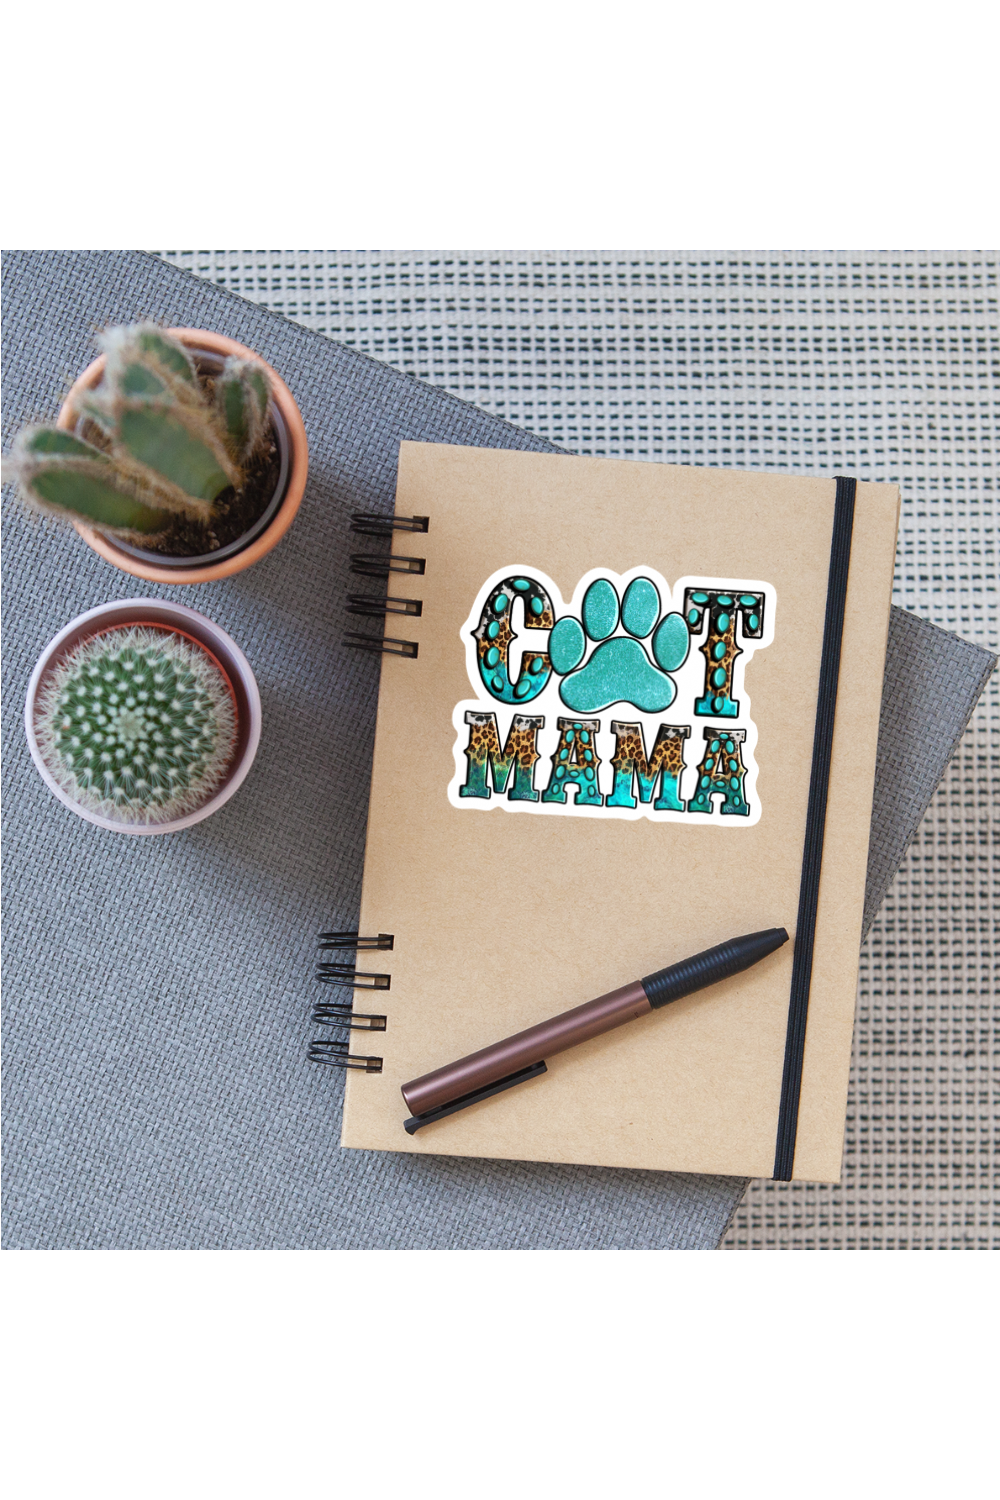 Women Cat Mama Vinyl Sticker - white matte - NicholesGifts.online